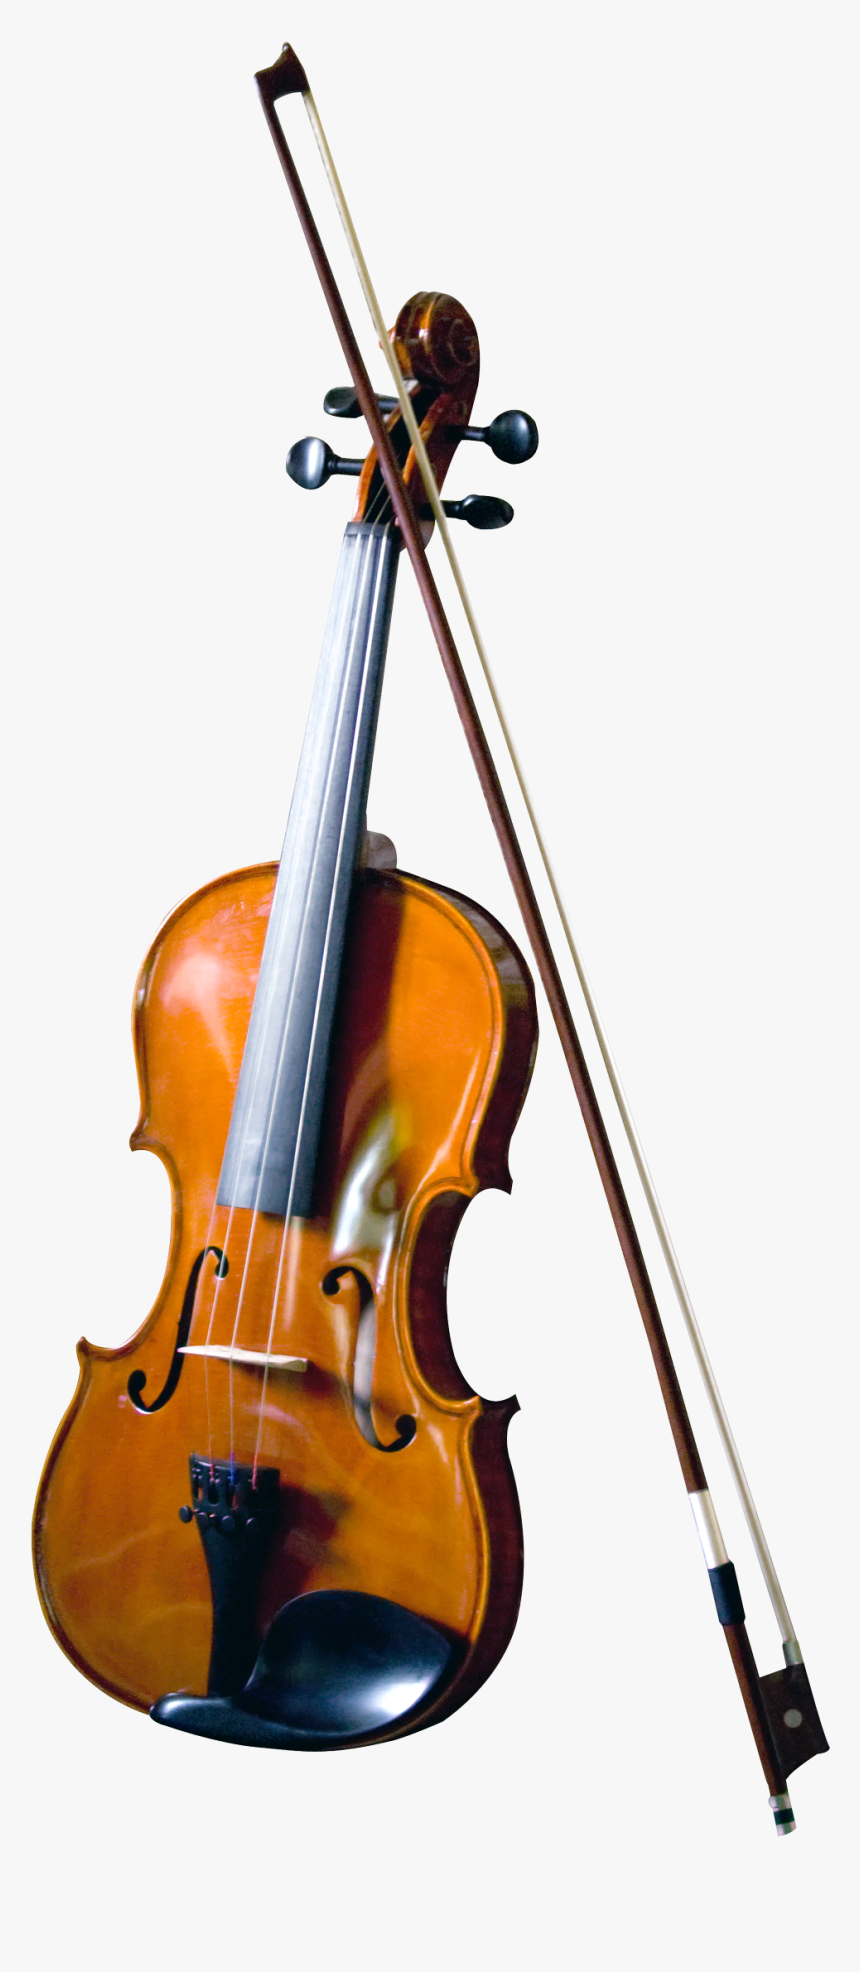 Violin Png Image - Transparent Background Violin Png, Png Download, Free Download